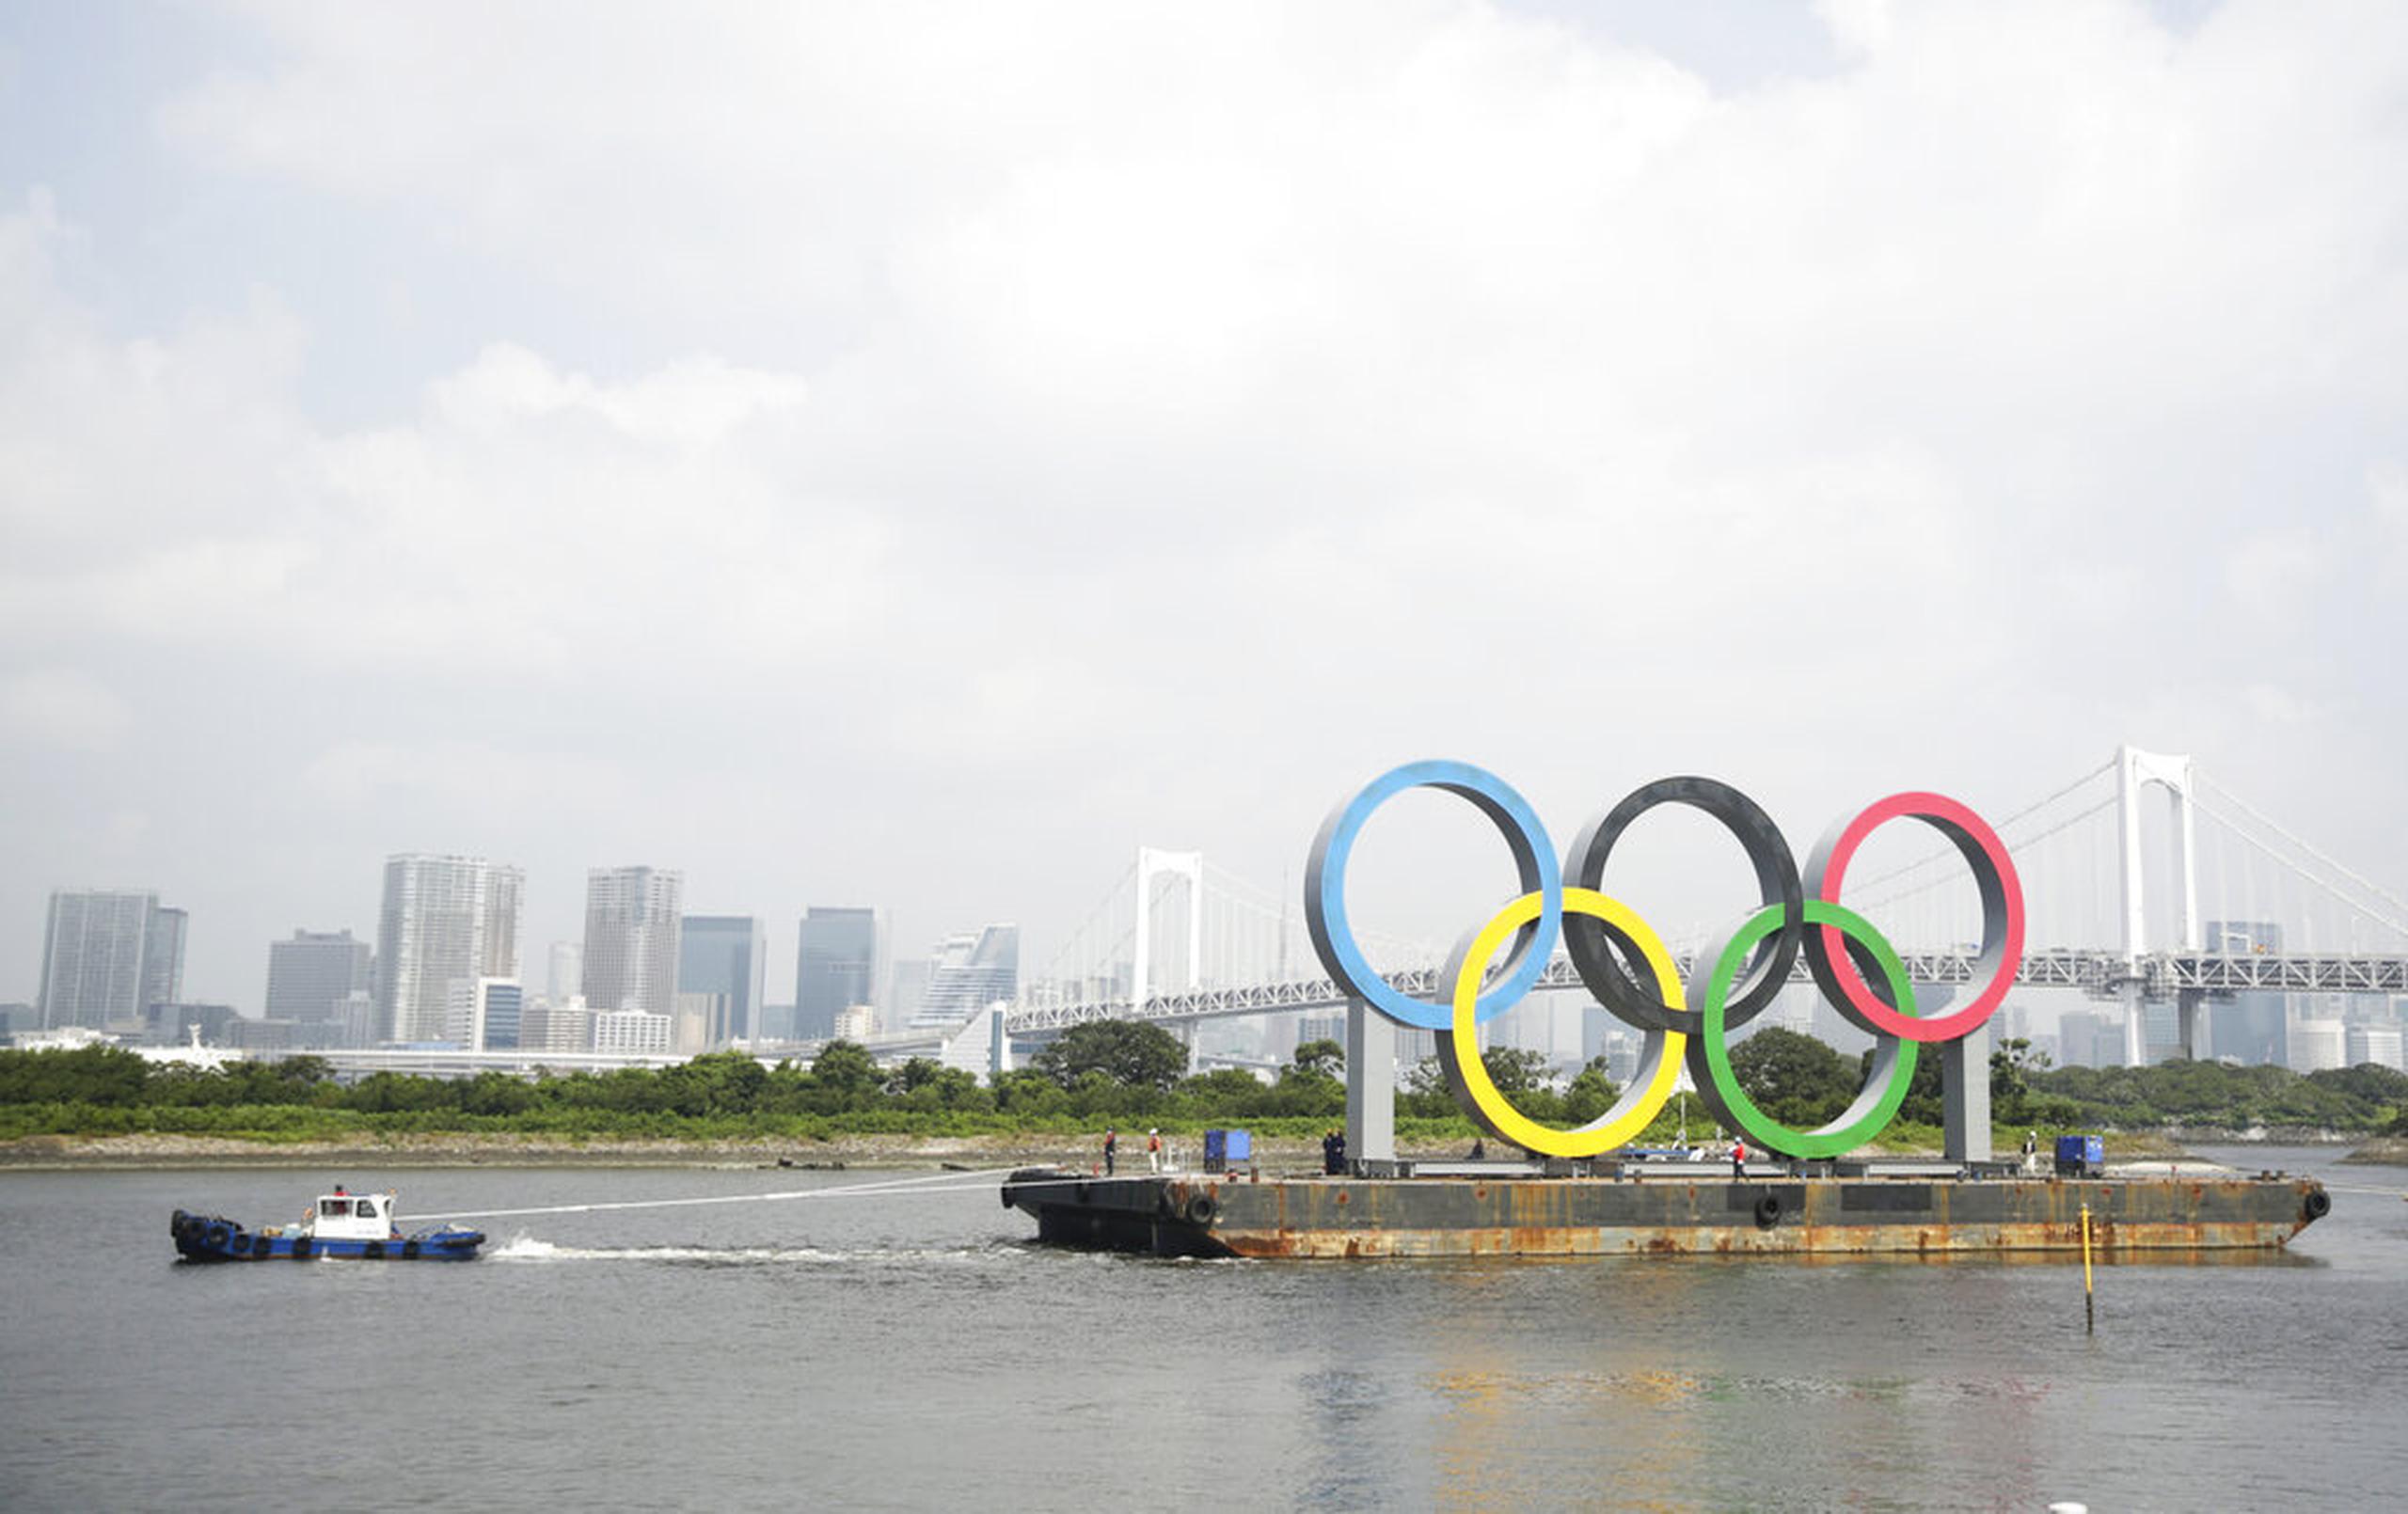 Una remolcadora trasladó la barcaza en la que se instalaron los anillos olímpicos en Tokio.